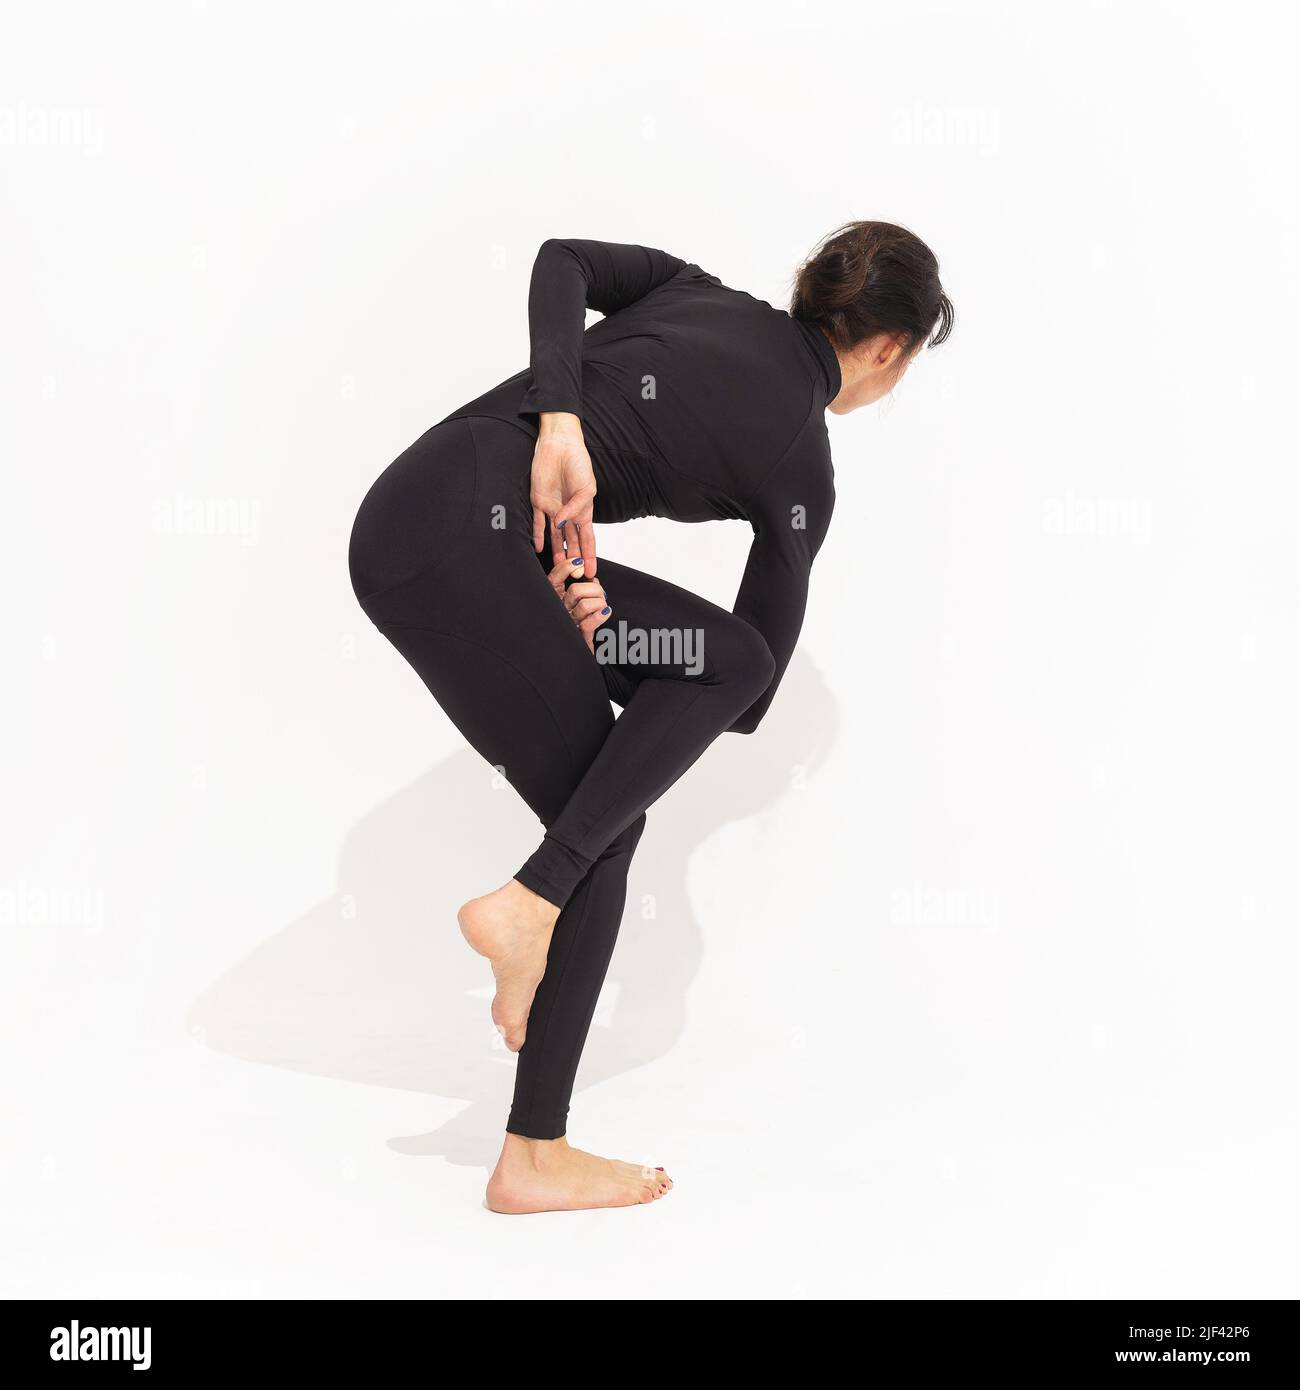 Mujer en negro sportswear practicando yoga, realiza una variación del ejercicio vatajanasana, pose de caballo sobre un fondo blanco Foto de stock